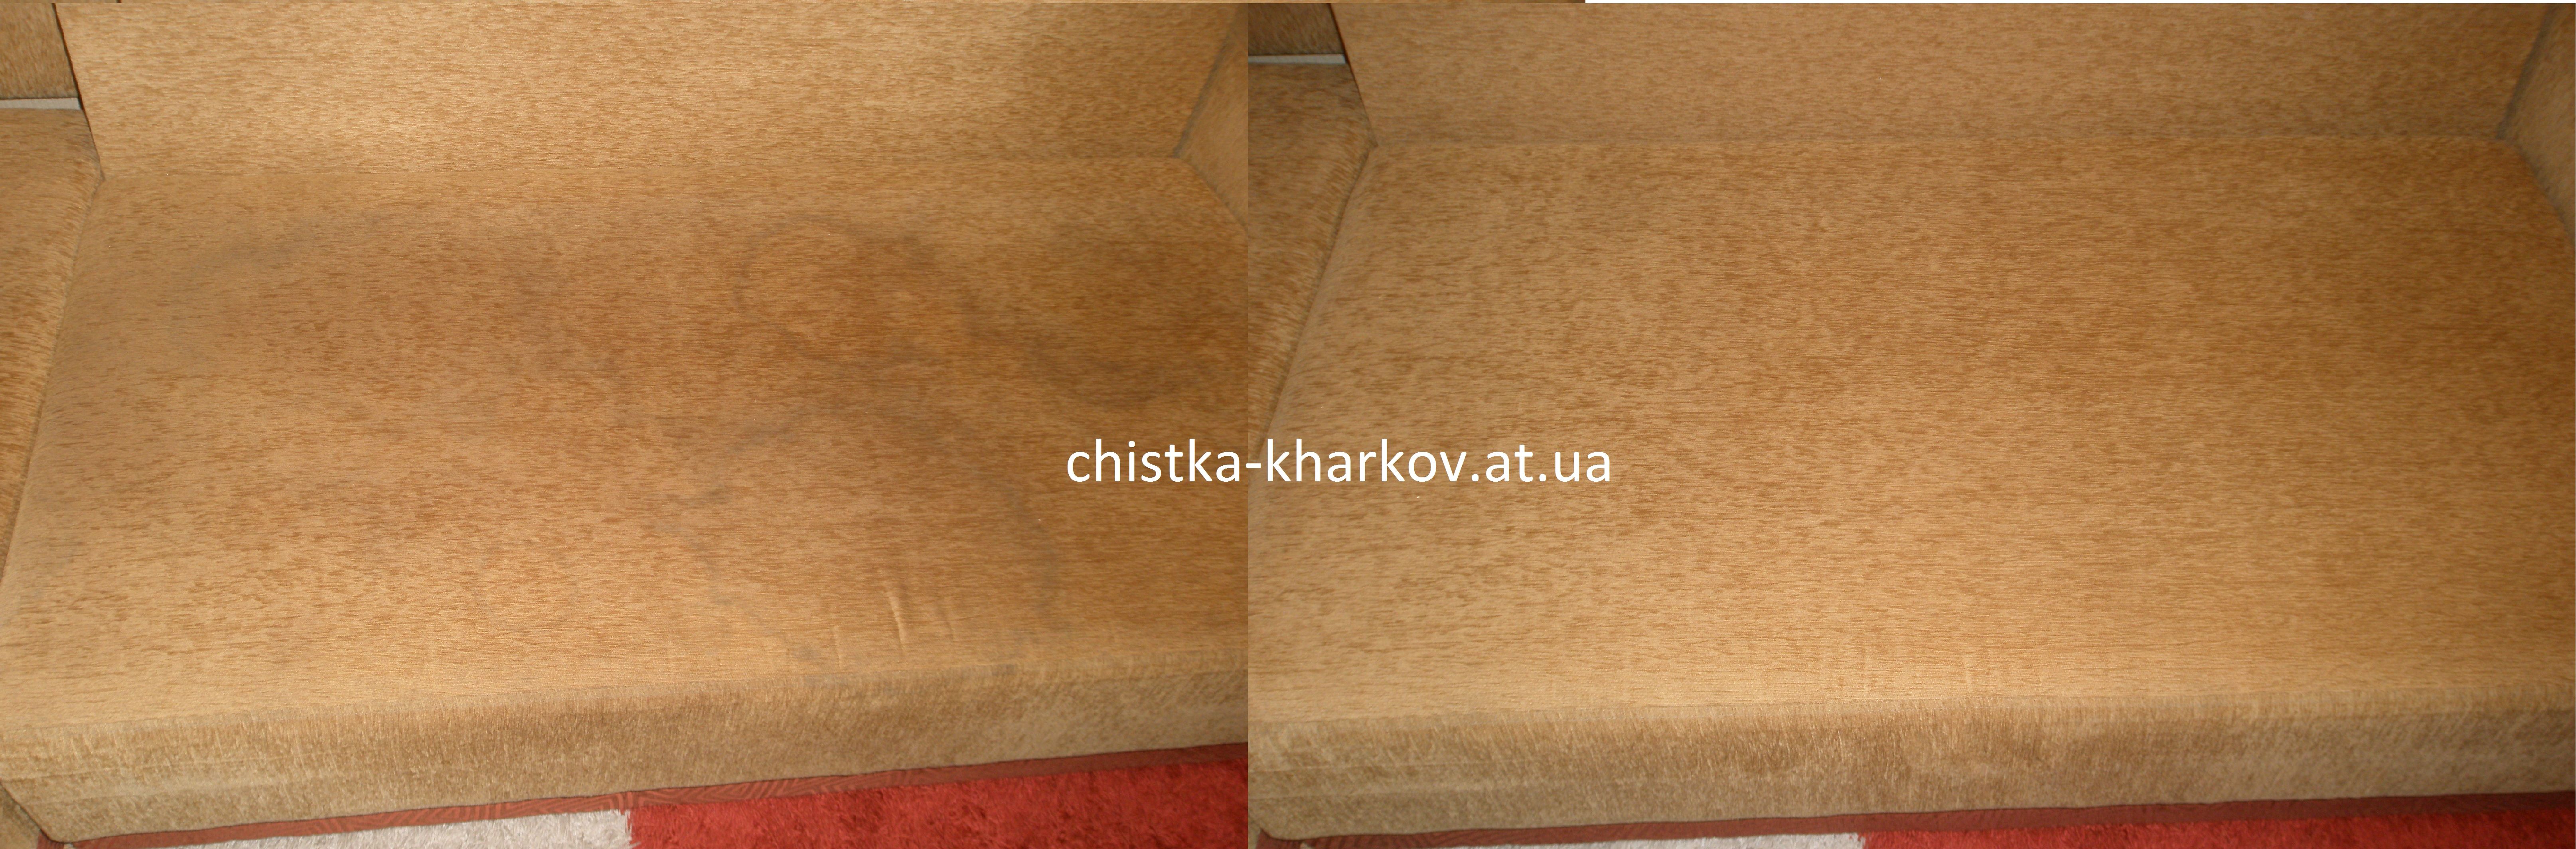 Химчистка мебели в Харькове